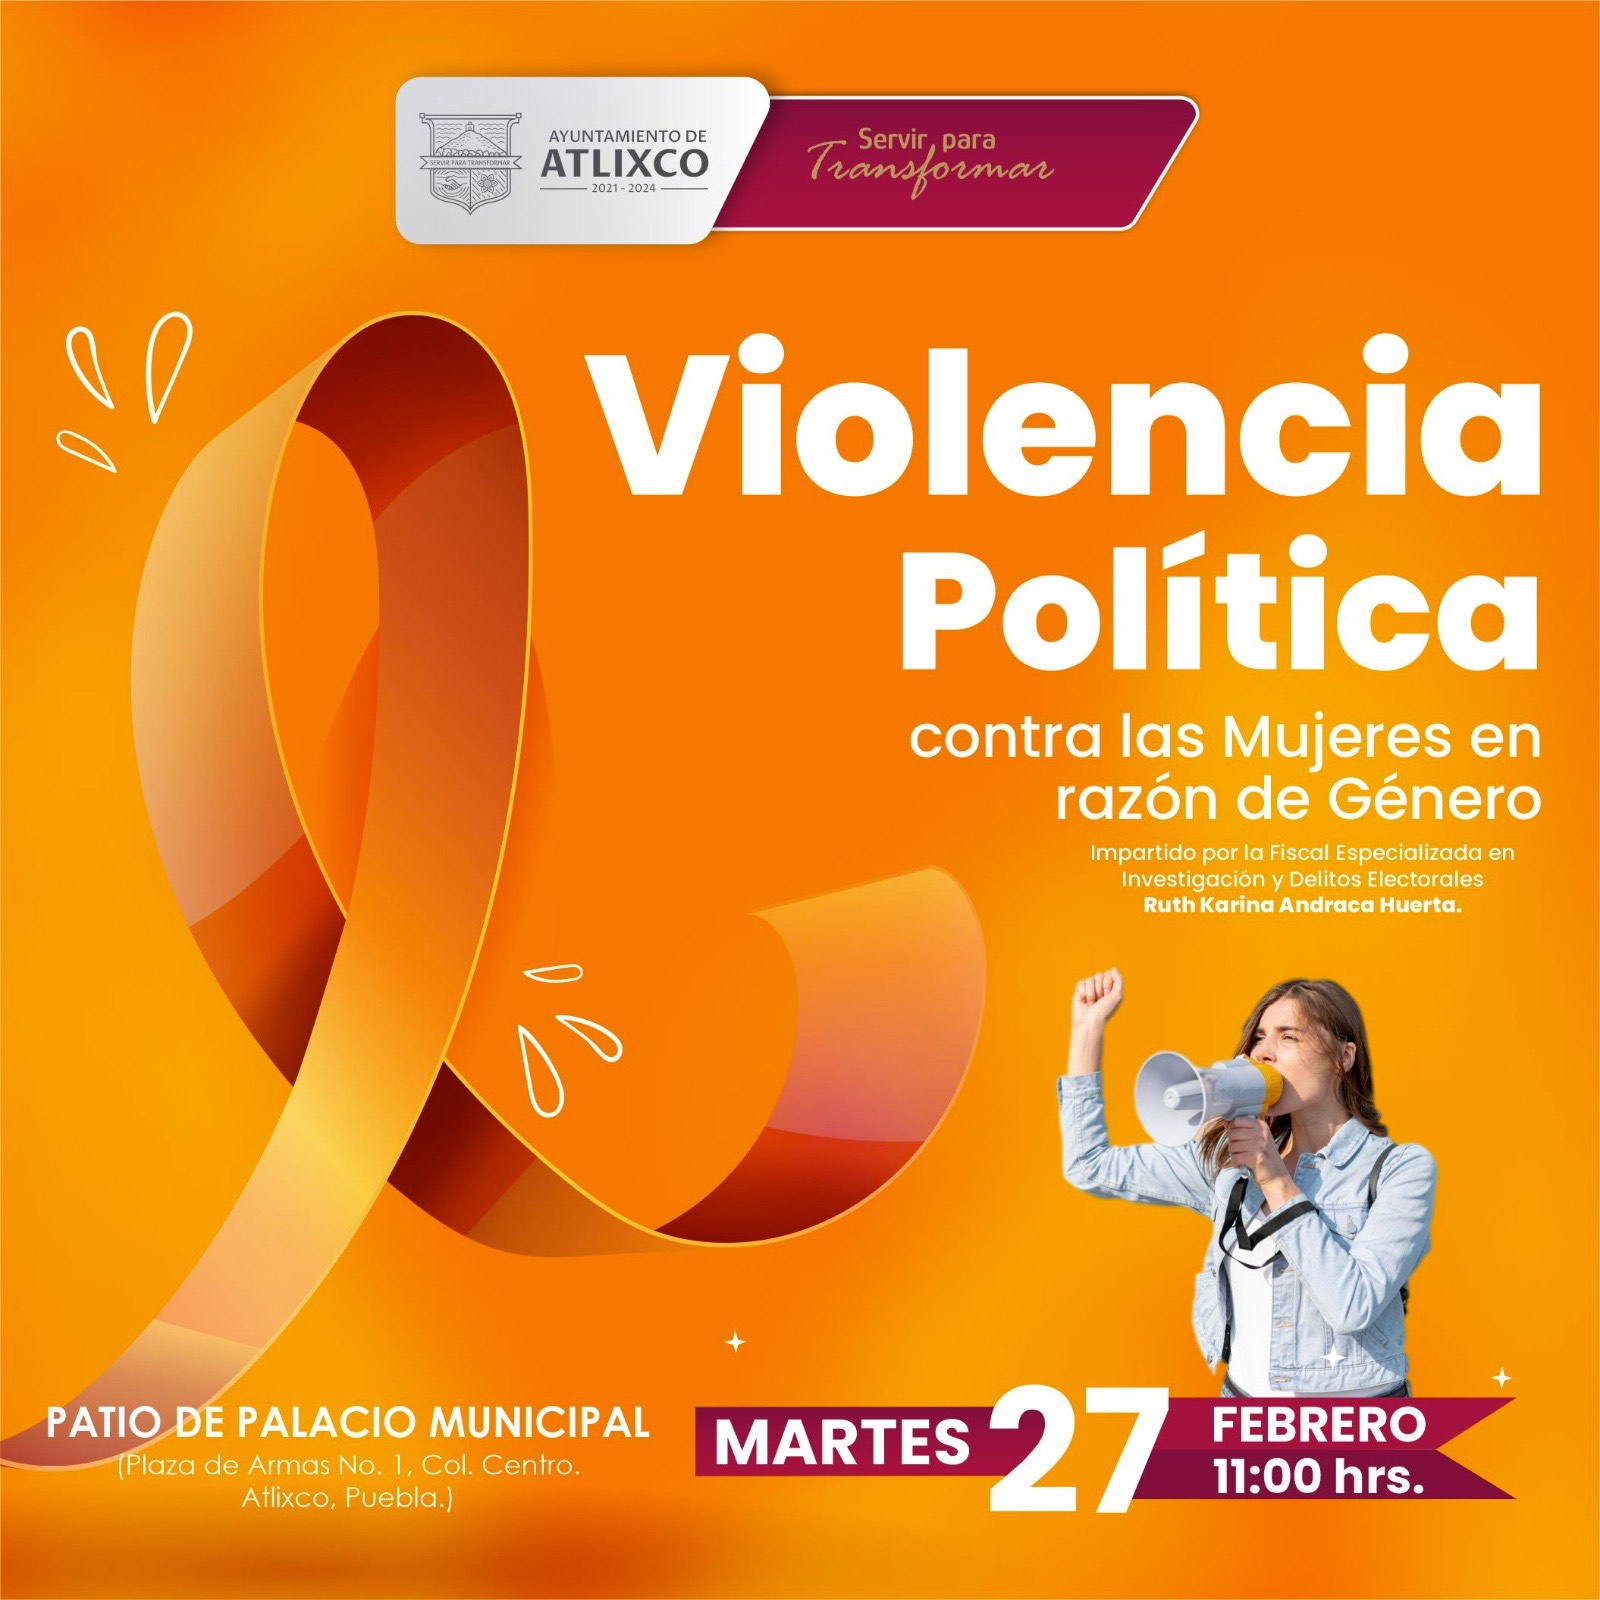 Este martes: Conferencia en Atlixco sobre la violencia política por género